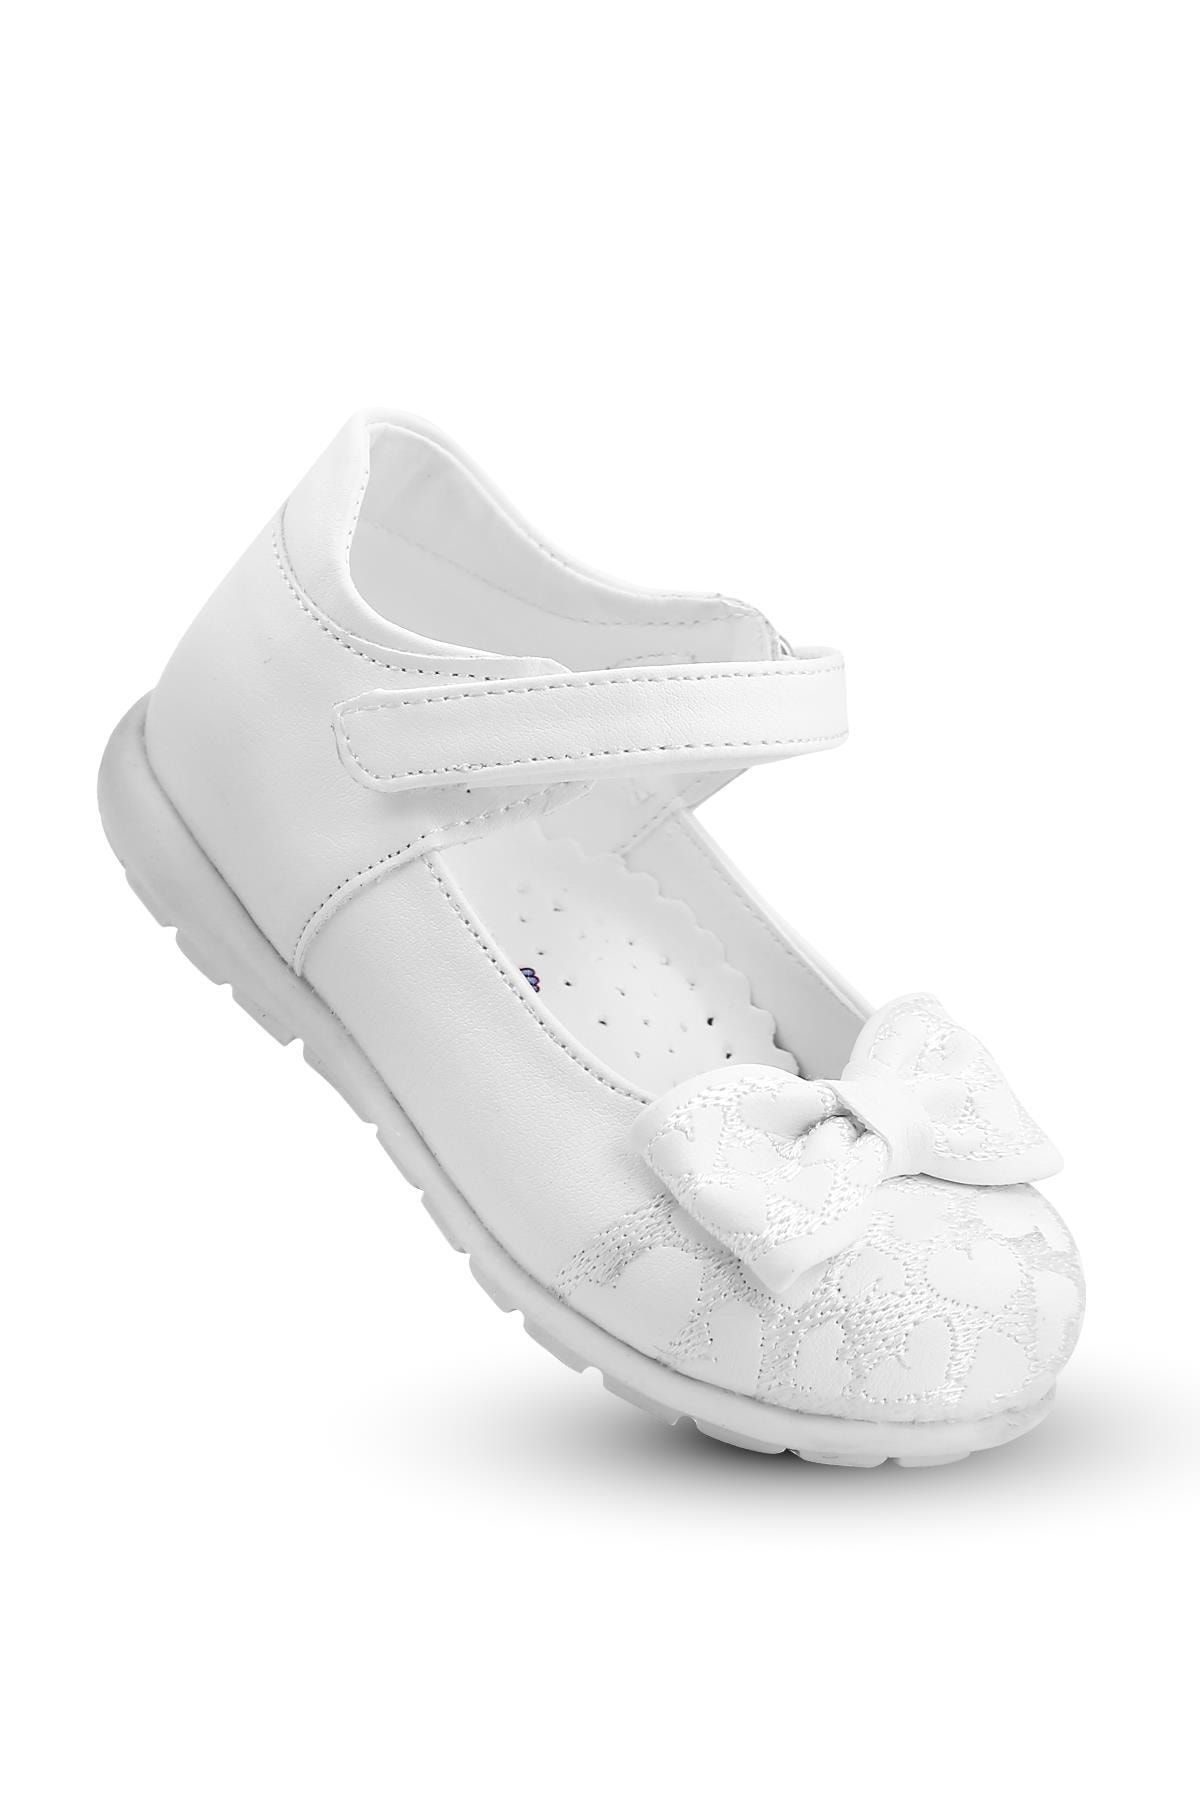 KAPTAN JUNIOR Kız Çocuk Bebek Ortopedik Ayakkabı Spor Babet Bssk 200 Beyaz